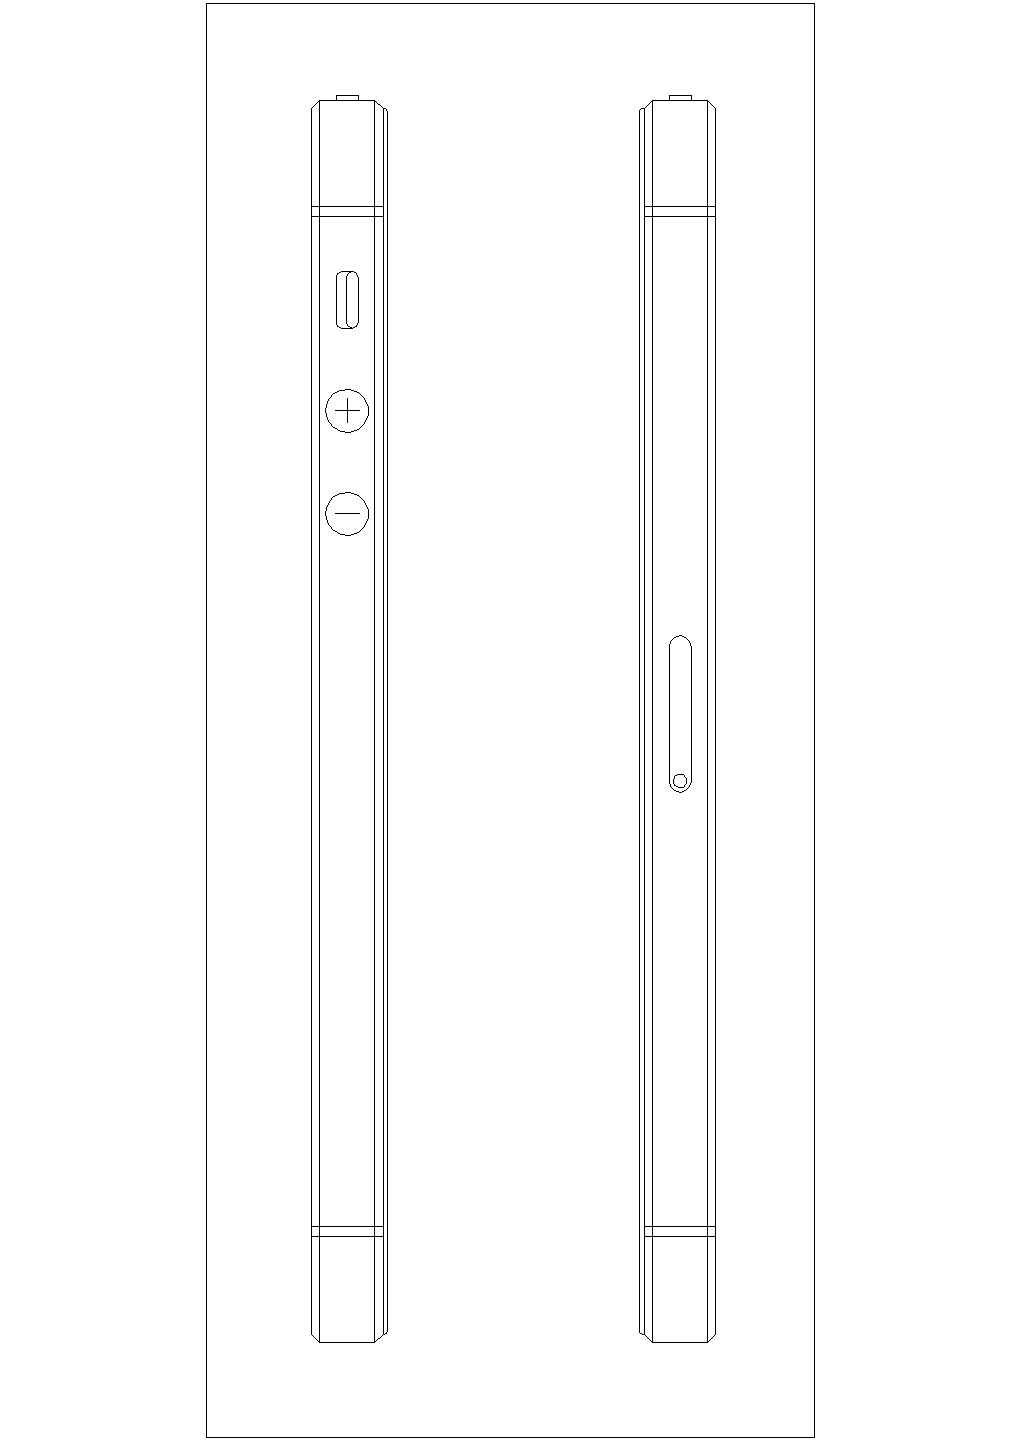 典型iPhone5S型手机外形设计cad图纸（甲级院设计）